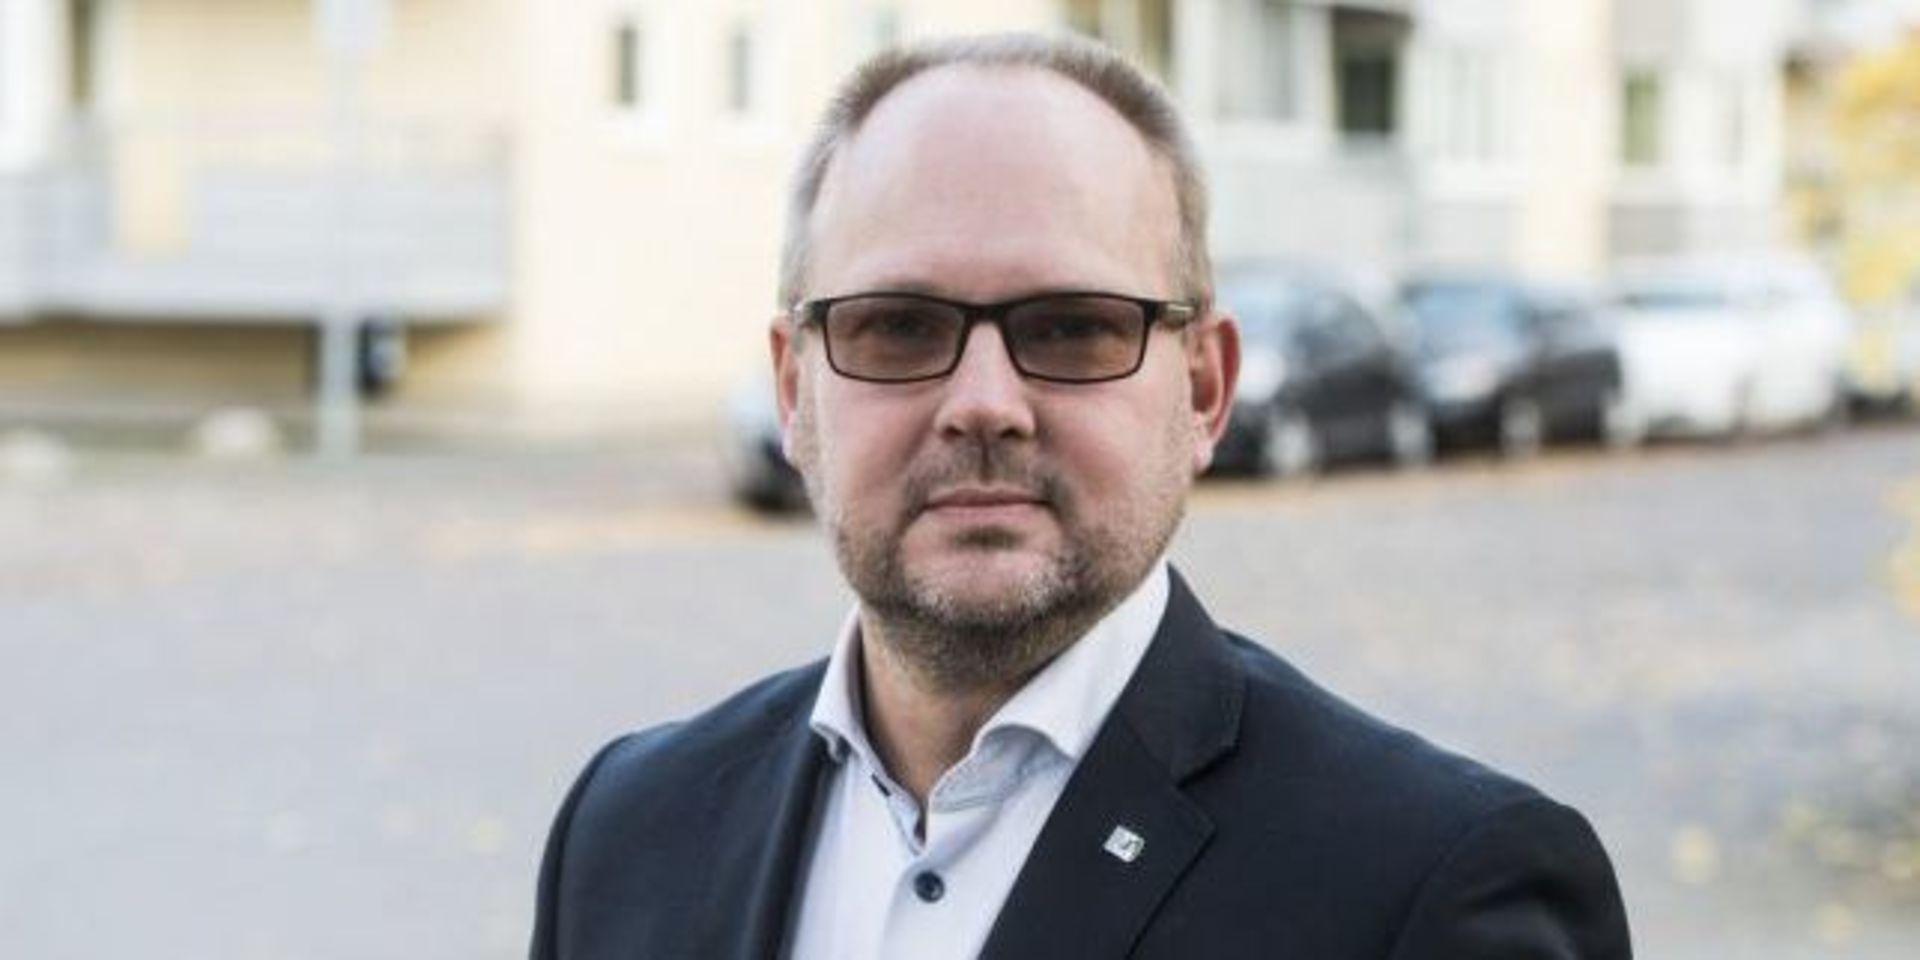 VILL KONTROLLERA LÄRARE. Sverigedemokraterna i Alingsås föreslår i sin budget att nämnderna ska kontrollera att lärarna är objektiva i sin undervisning. Enligt Glenn Pettersson, partiets gruppledare i fullmäktige, så är inte lärarna objektiva i dag.